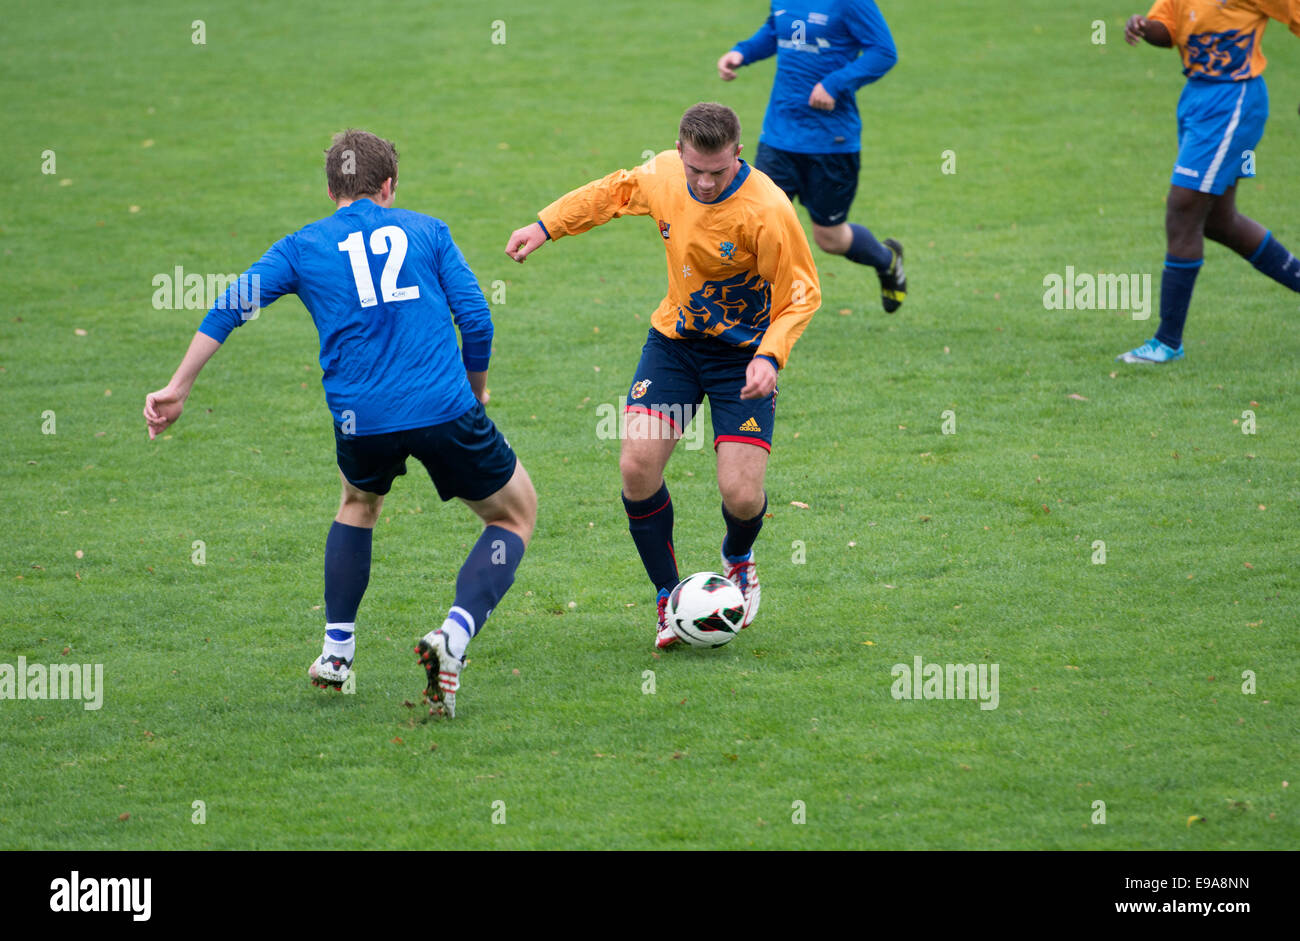 Students football match at Warwick University, UK Stock Photo